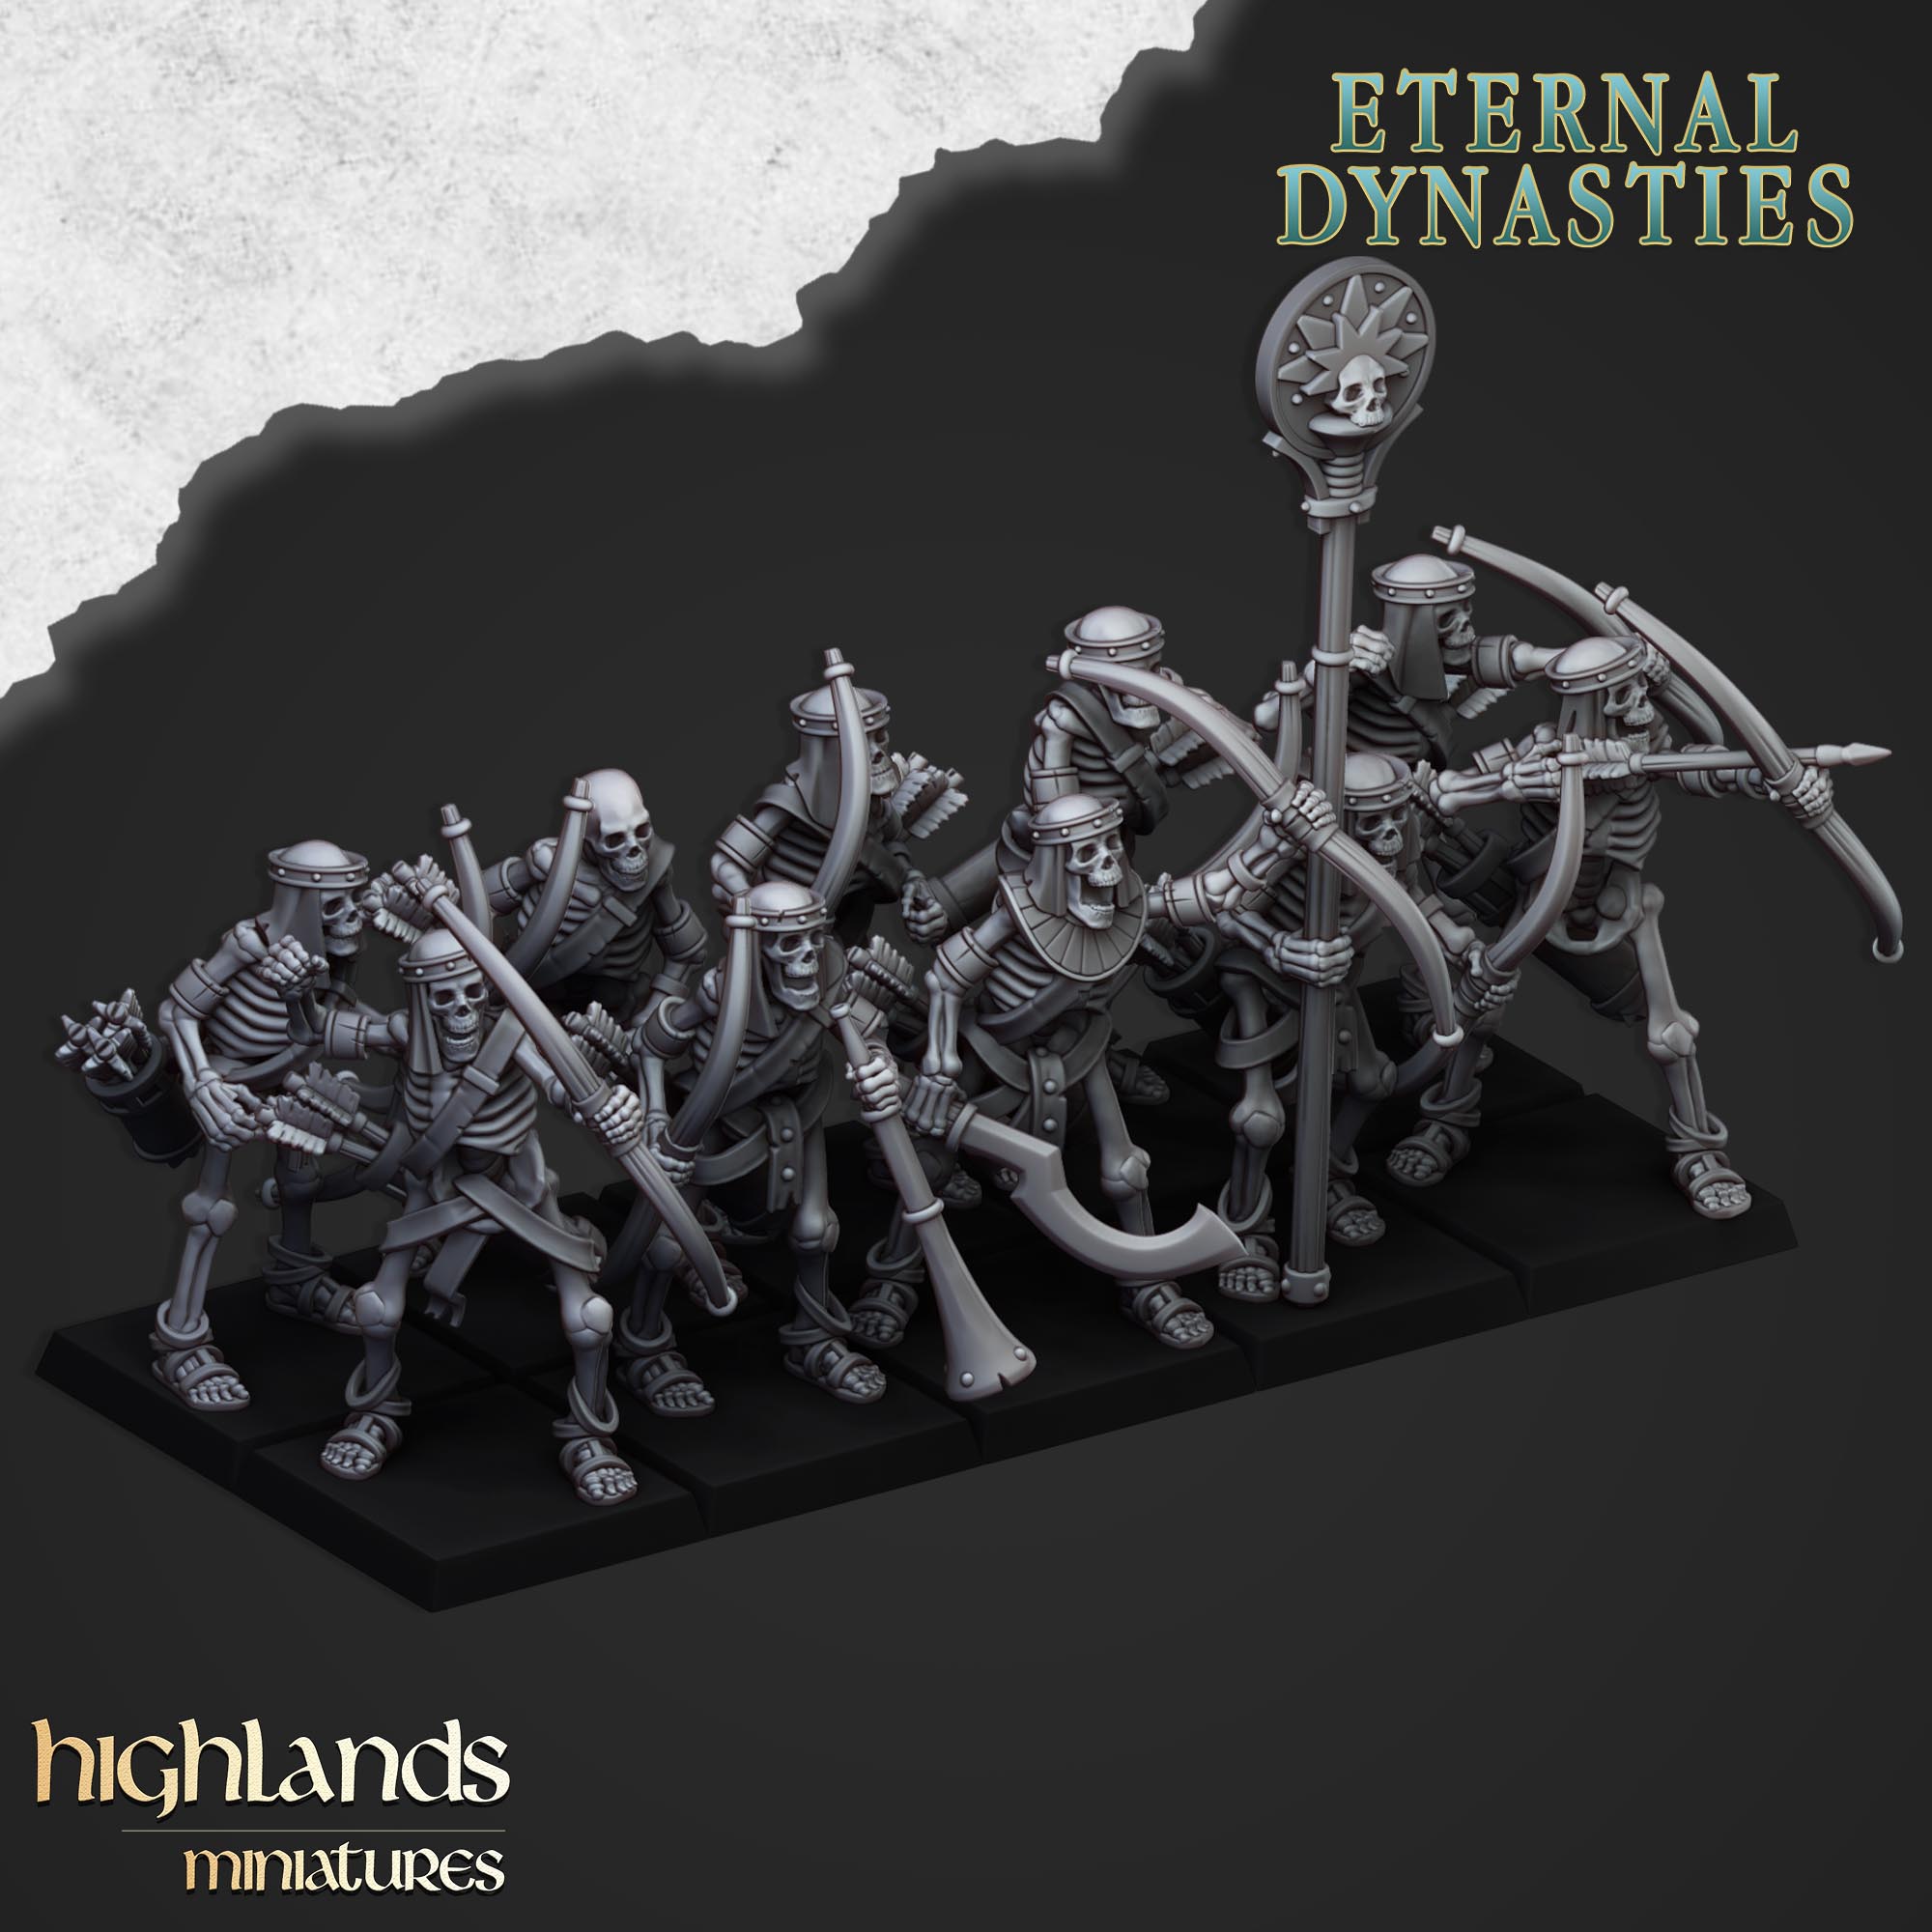 Arqueros esqueleto antiguos (x10) - Dinastías eternas | Miniaturas de las Tierras Altas